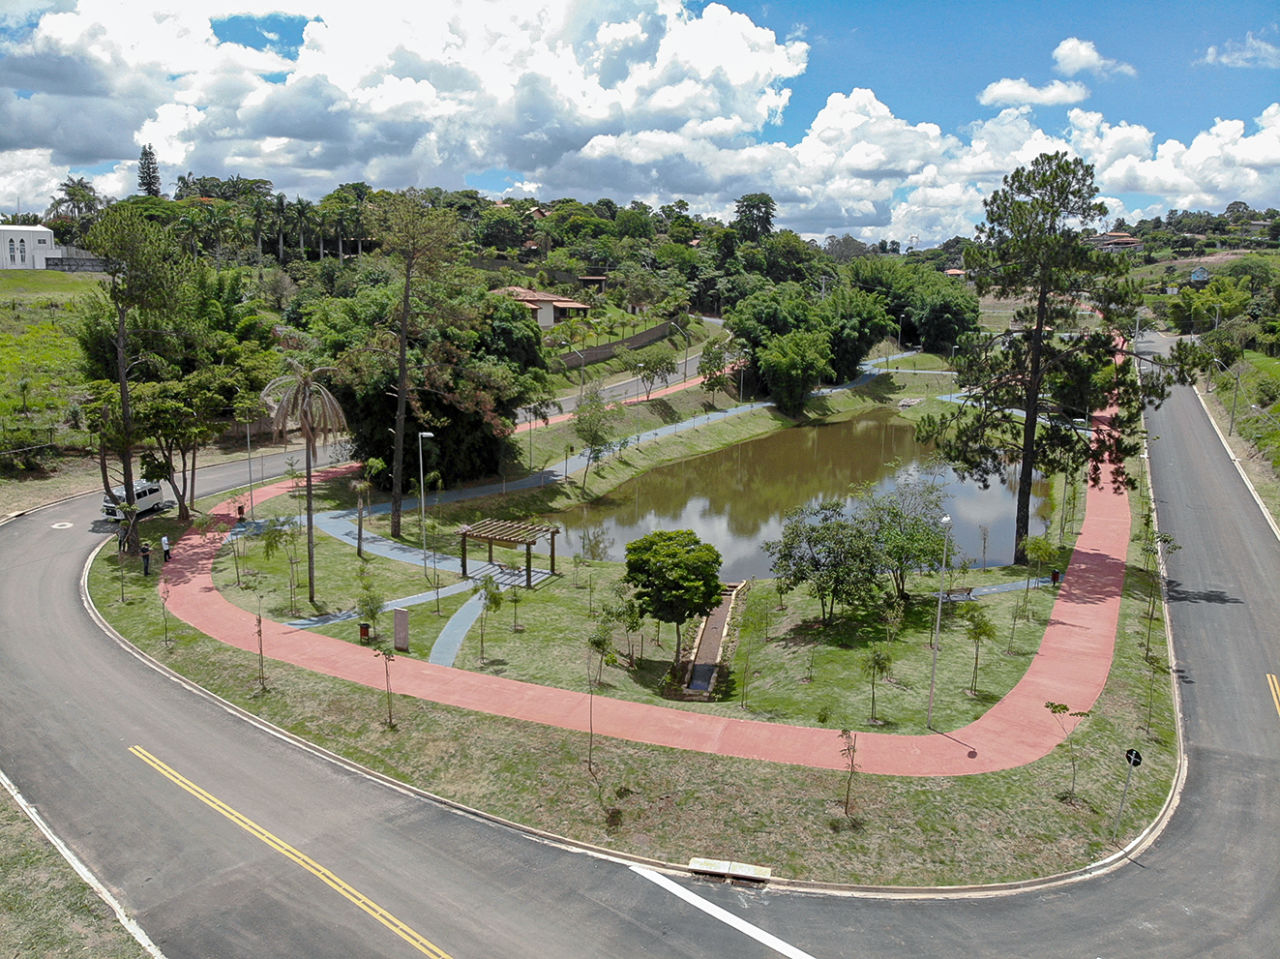 Foto aérea de parque com árvores, pista da corrida e caminhada, lago, pergolado